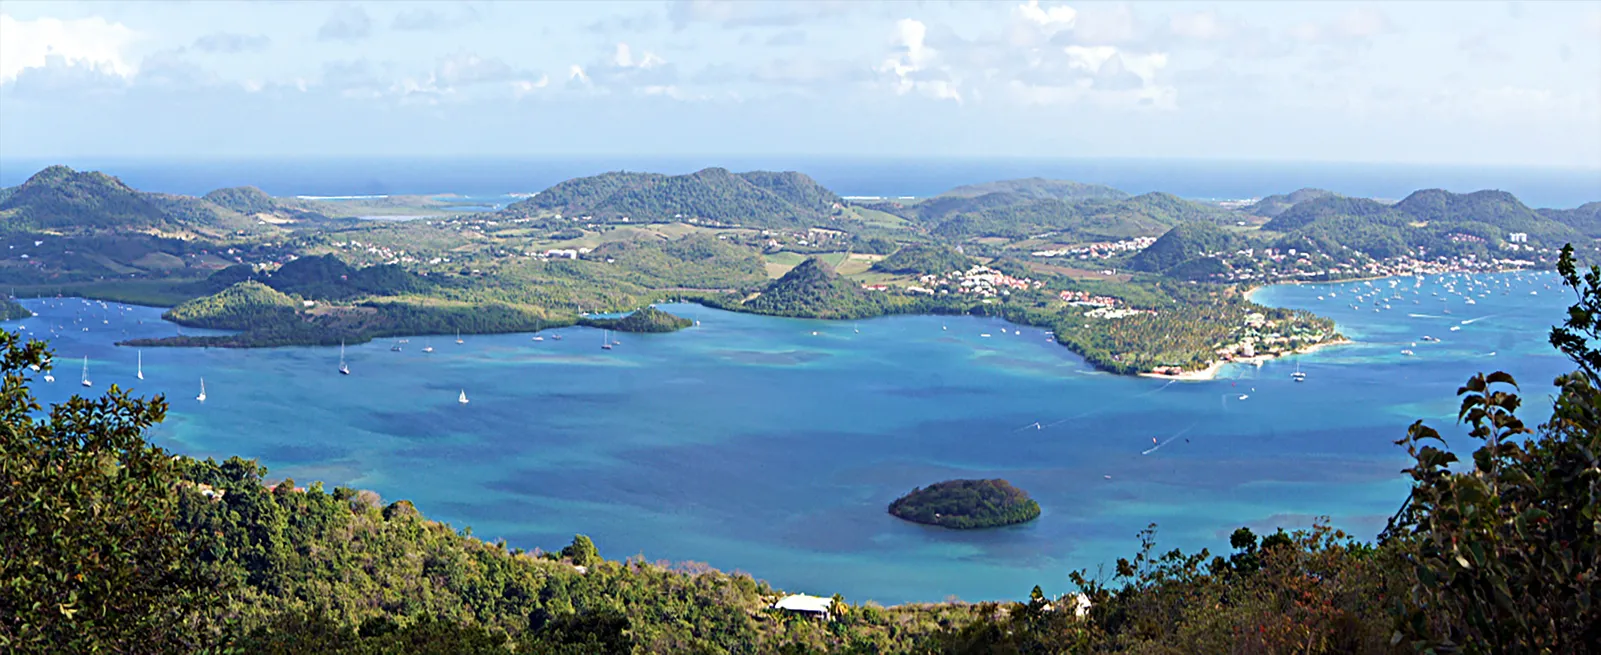 Le Marin et ses environs, en Martinique, Antilles françaises  © iStock / Eduardo Cabanas